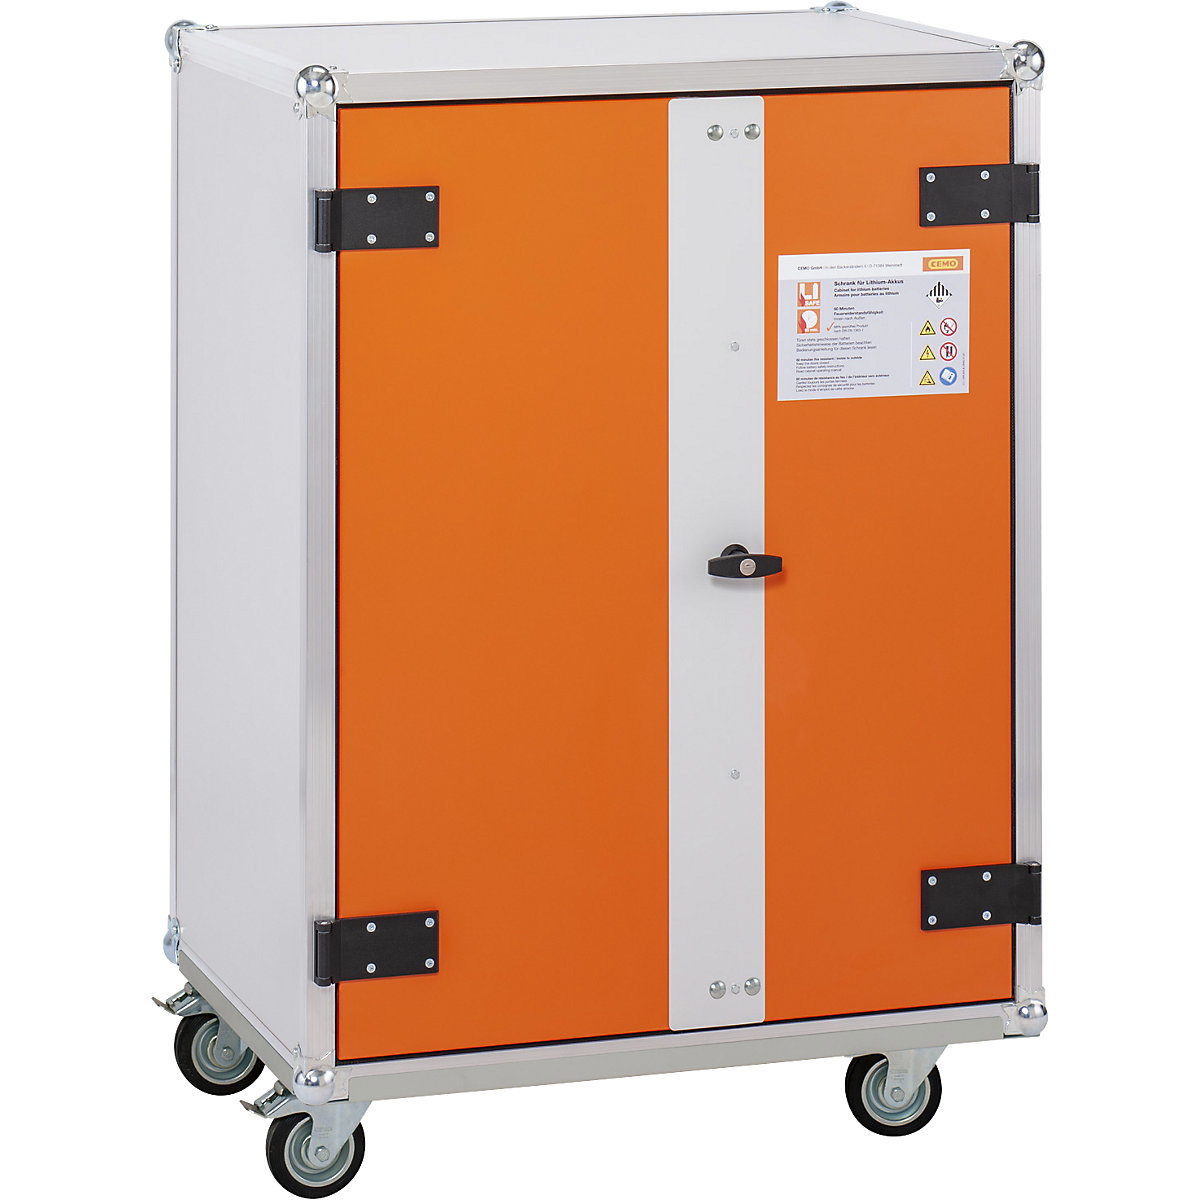 Veilige acculaadkast PREMIUM PLUS – CEMO, d x h = 660 x 1150 mm, 230 V, oranje/grijs-1